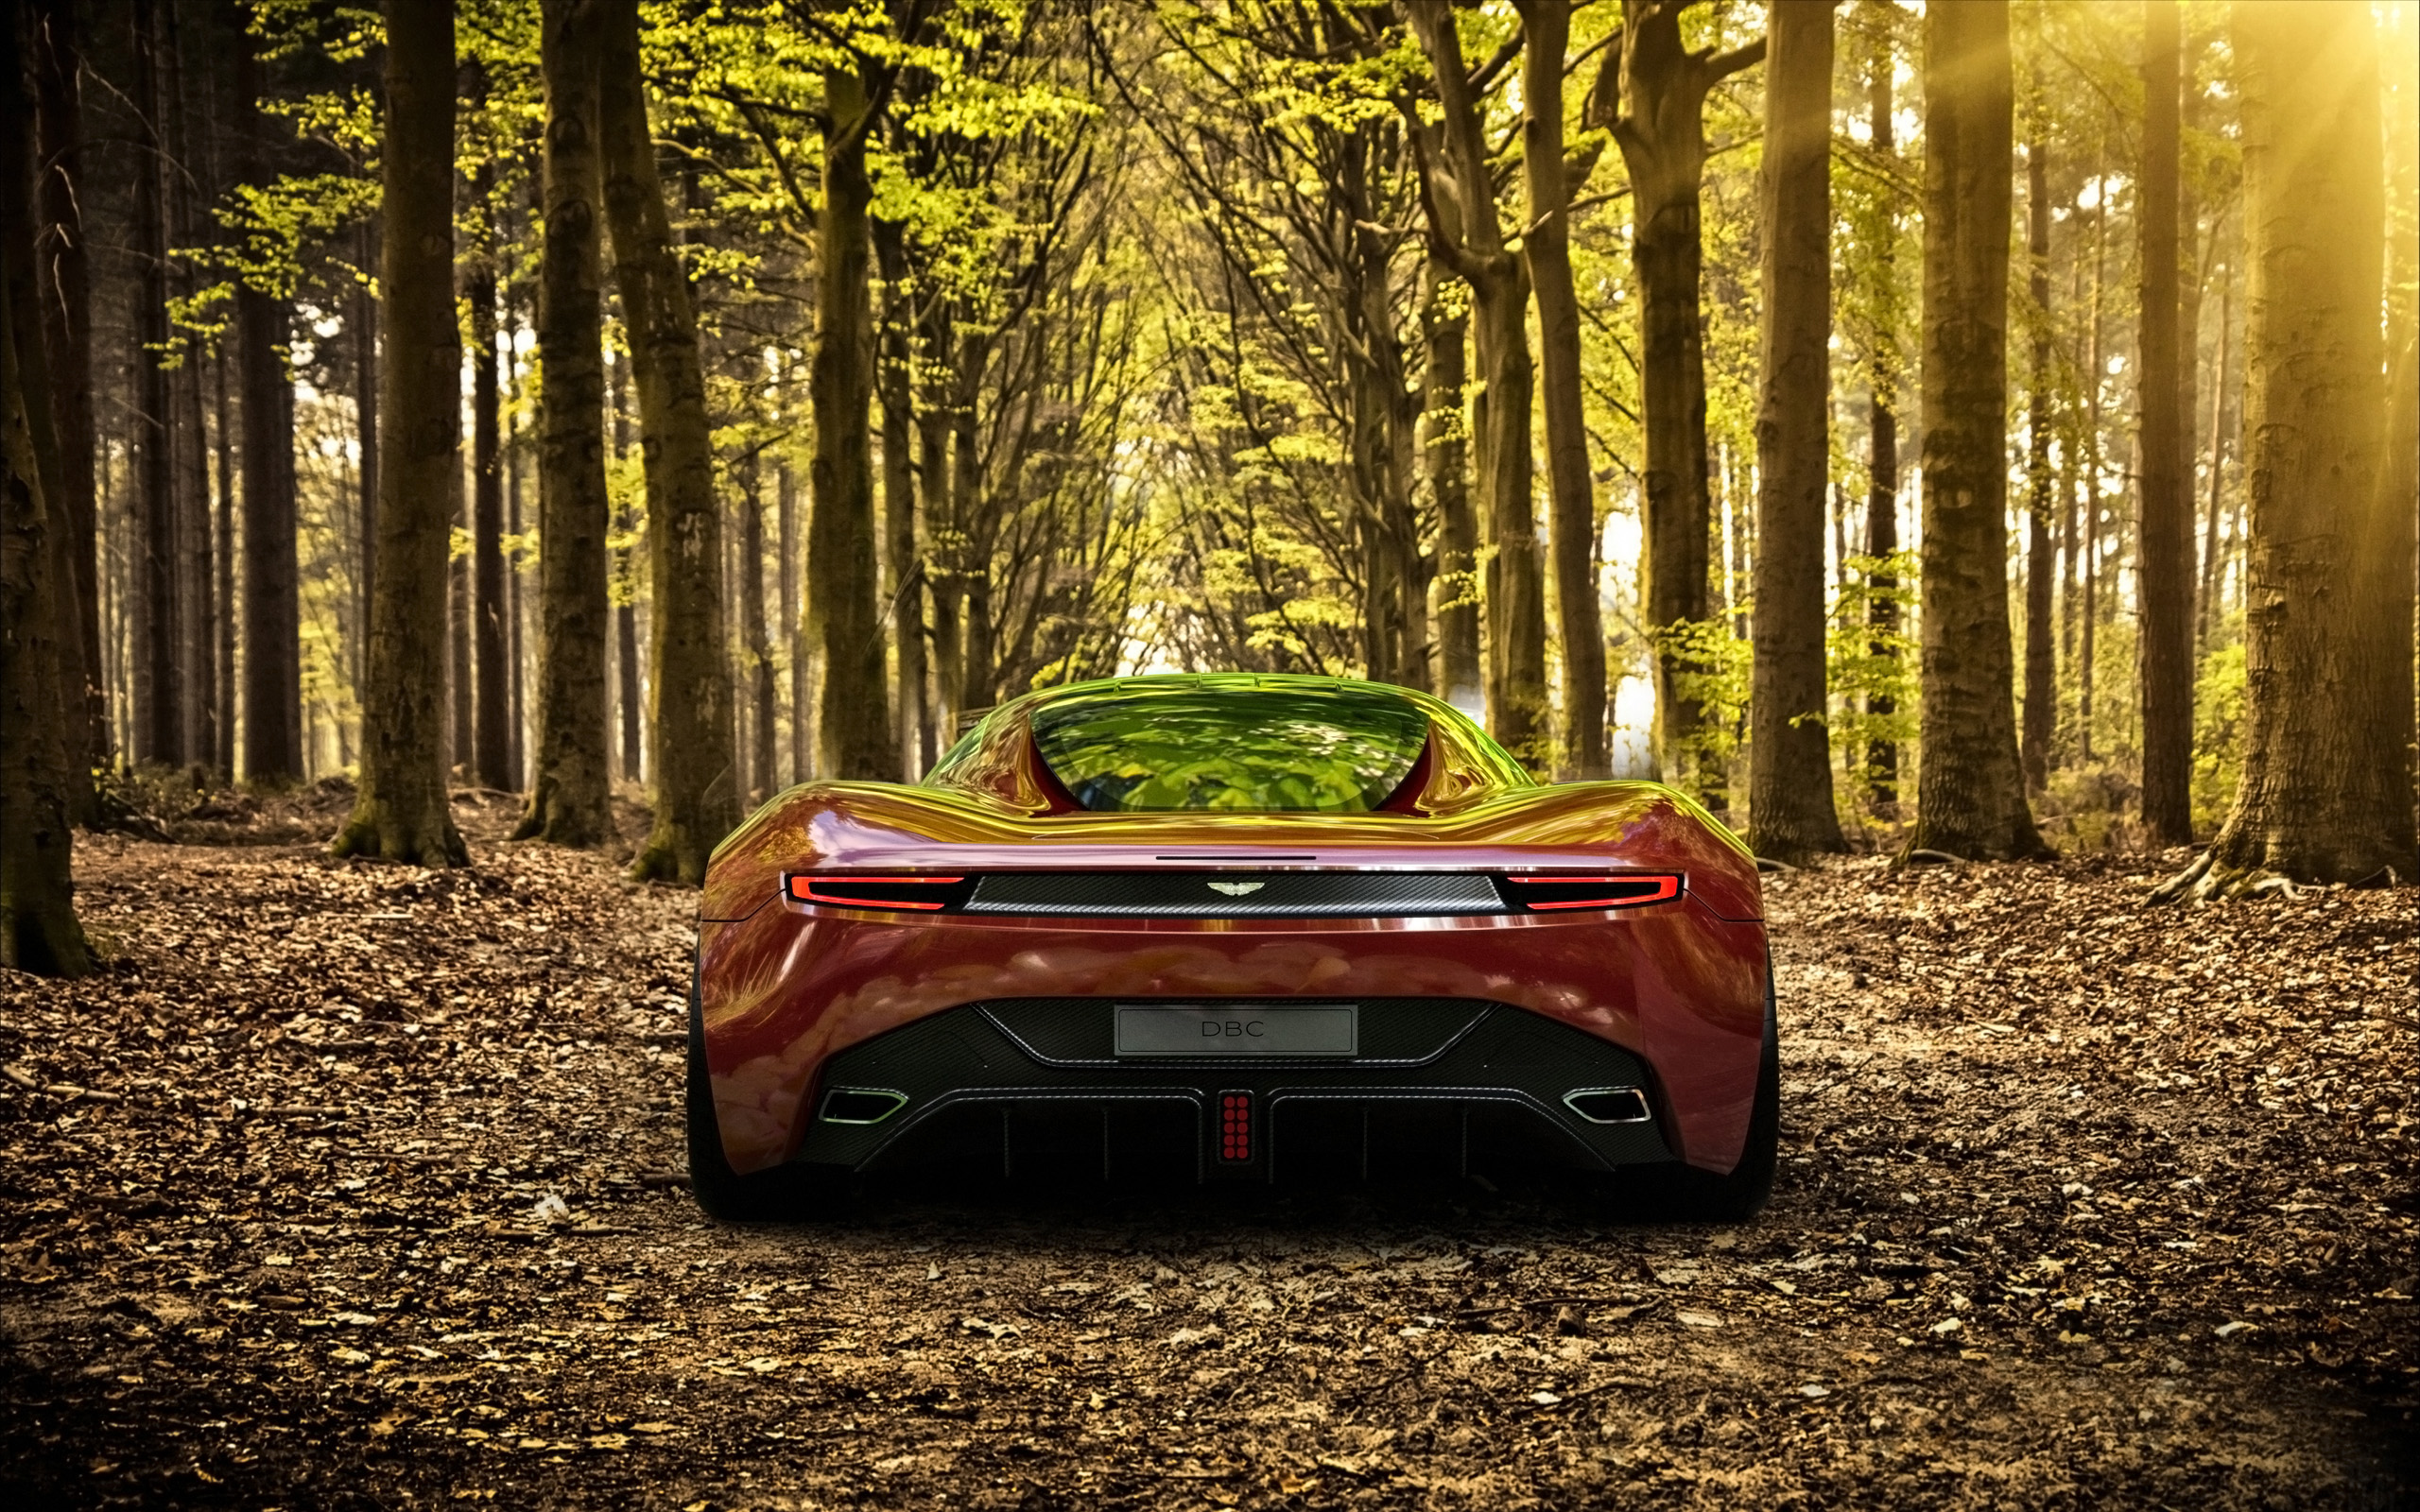 2013, Aston, Martin, Dbc, Concept, Supercar, Ge Wallpaper